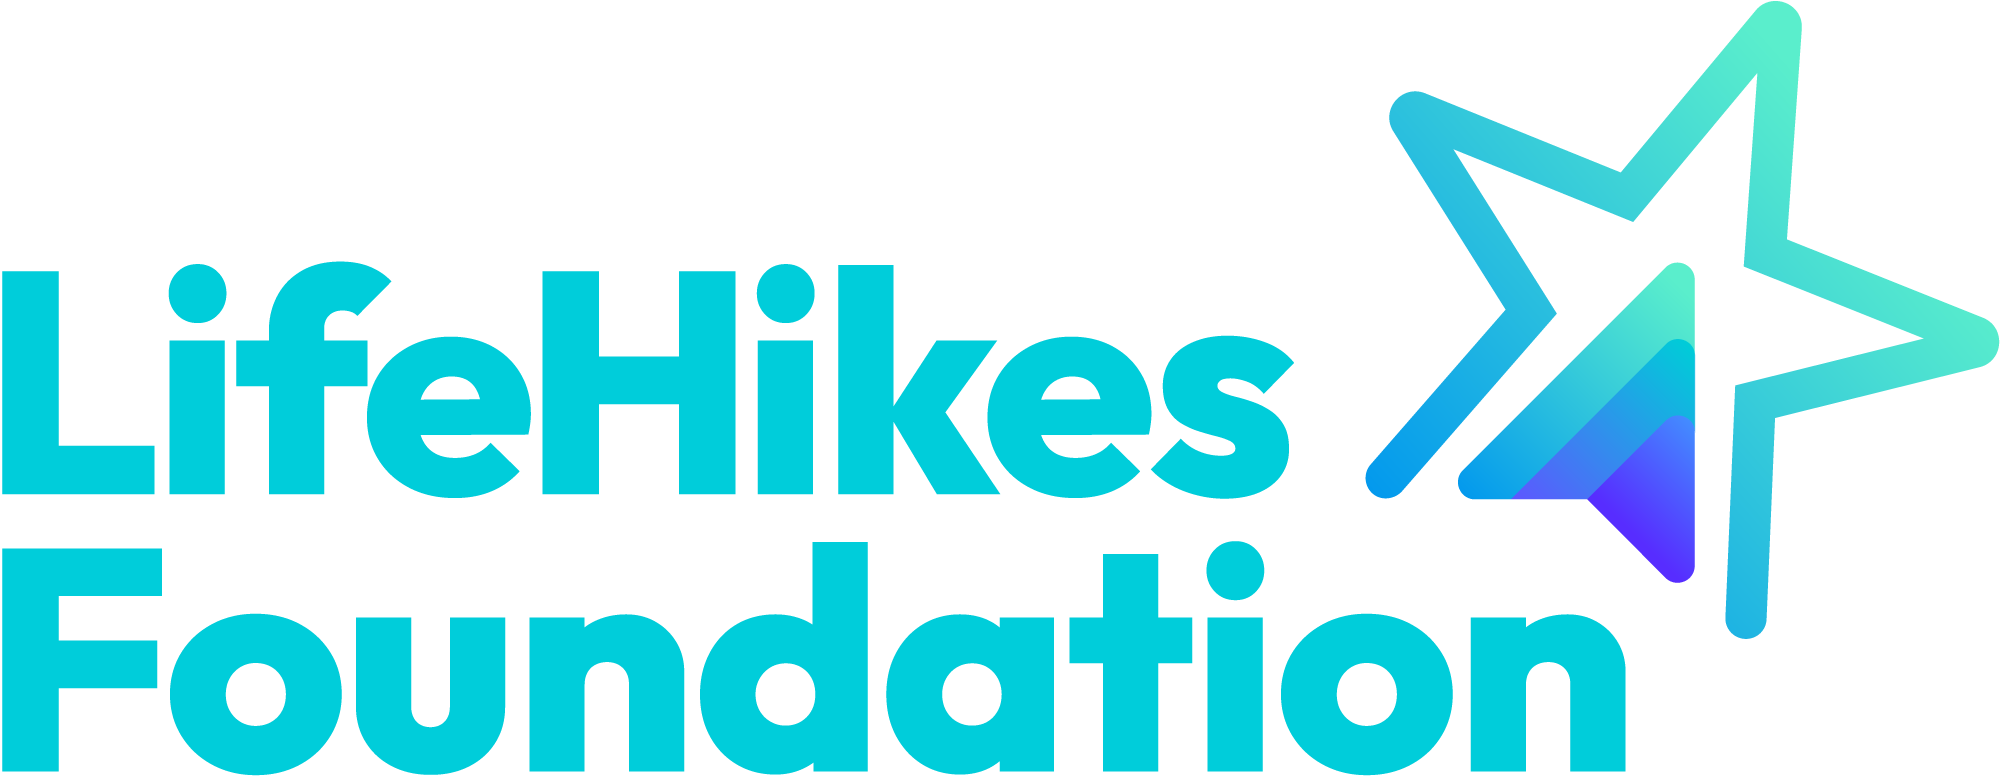 Lifehikes Foundation